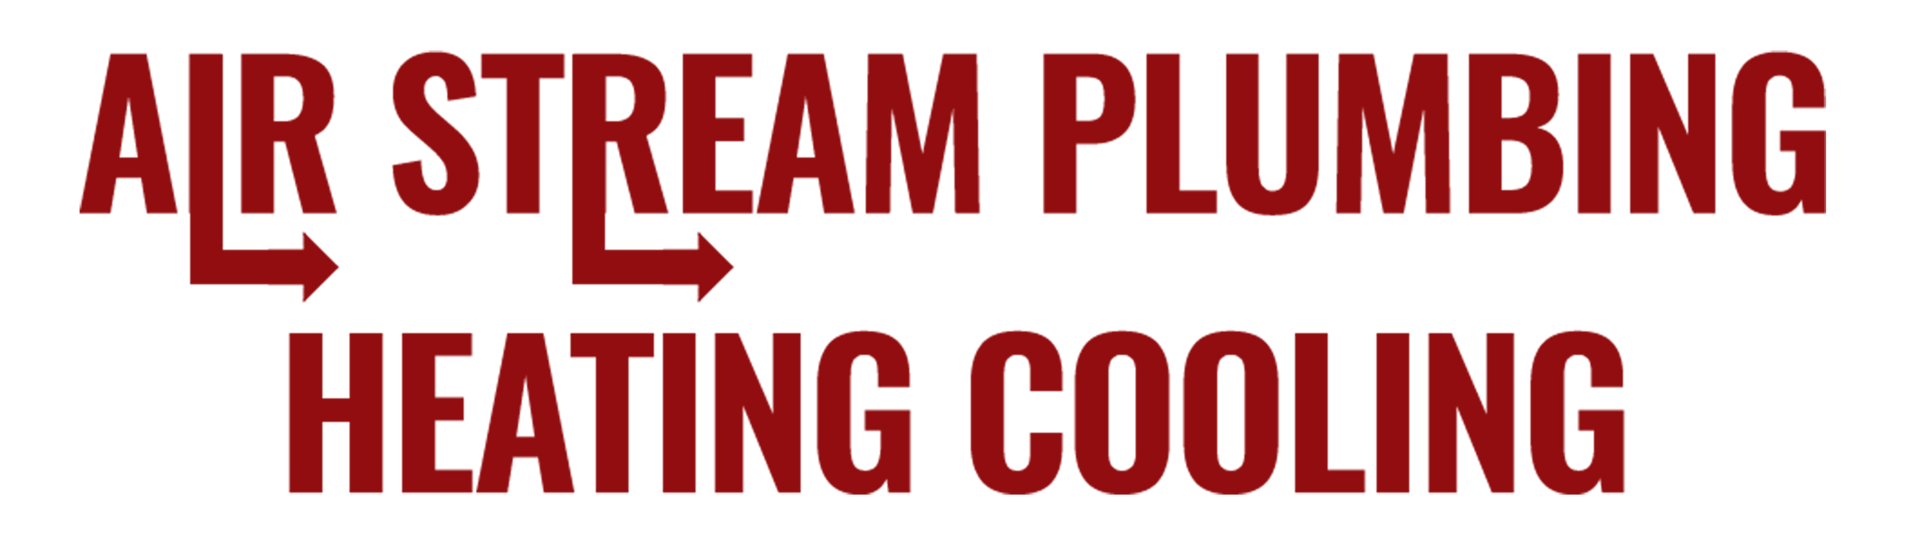 air stream plumbing heating cooling logo